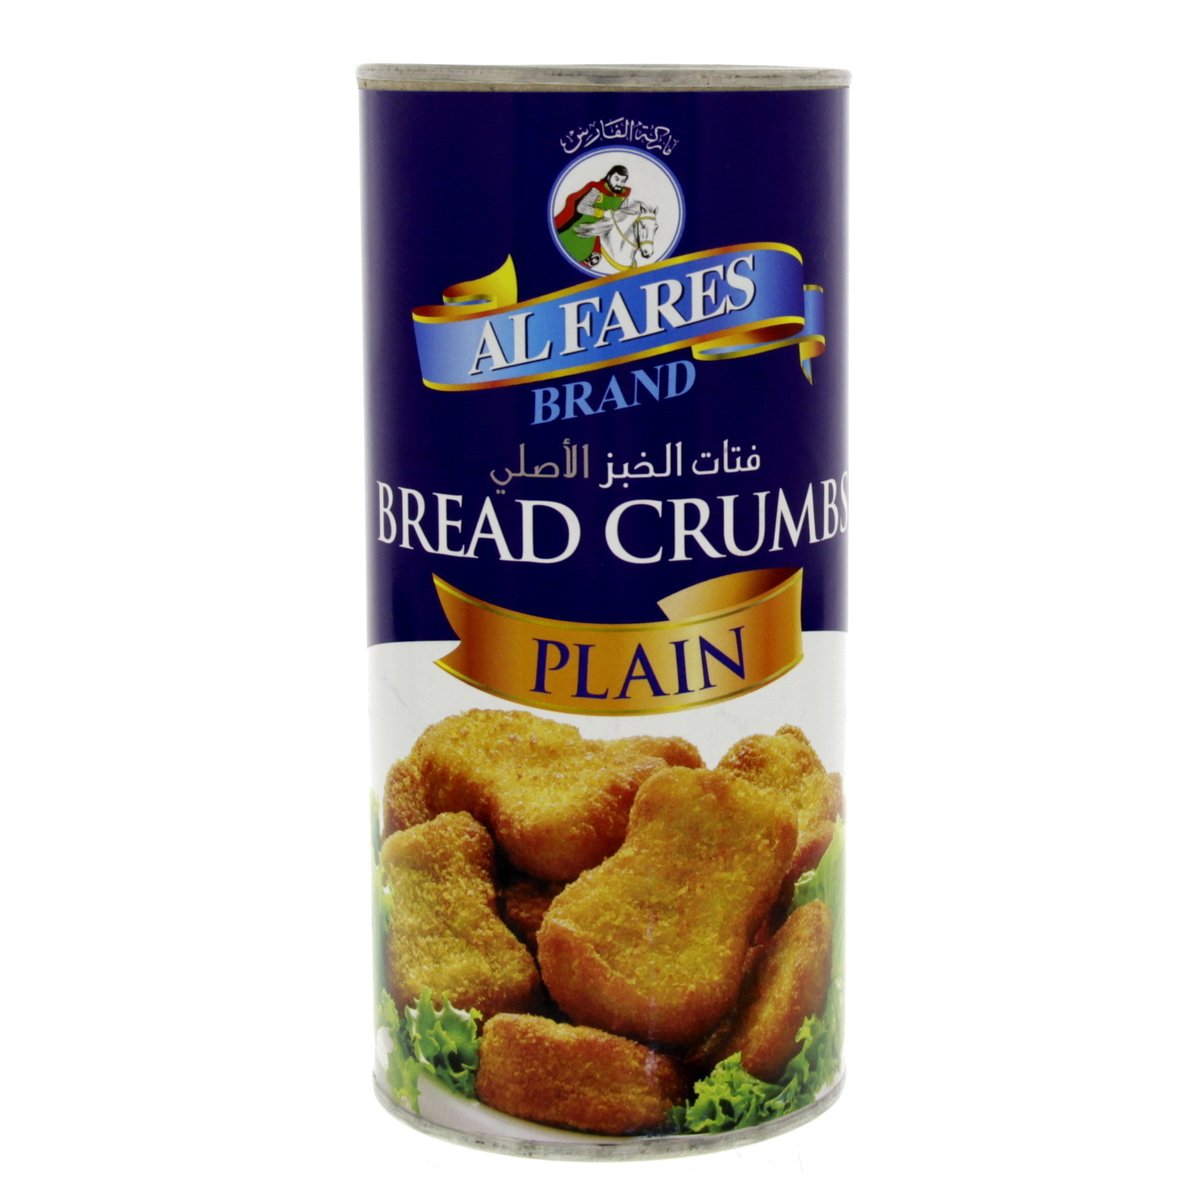 Al Fares Bread Crumbs Plain 300 g